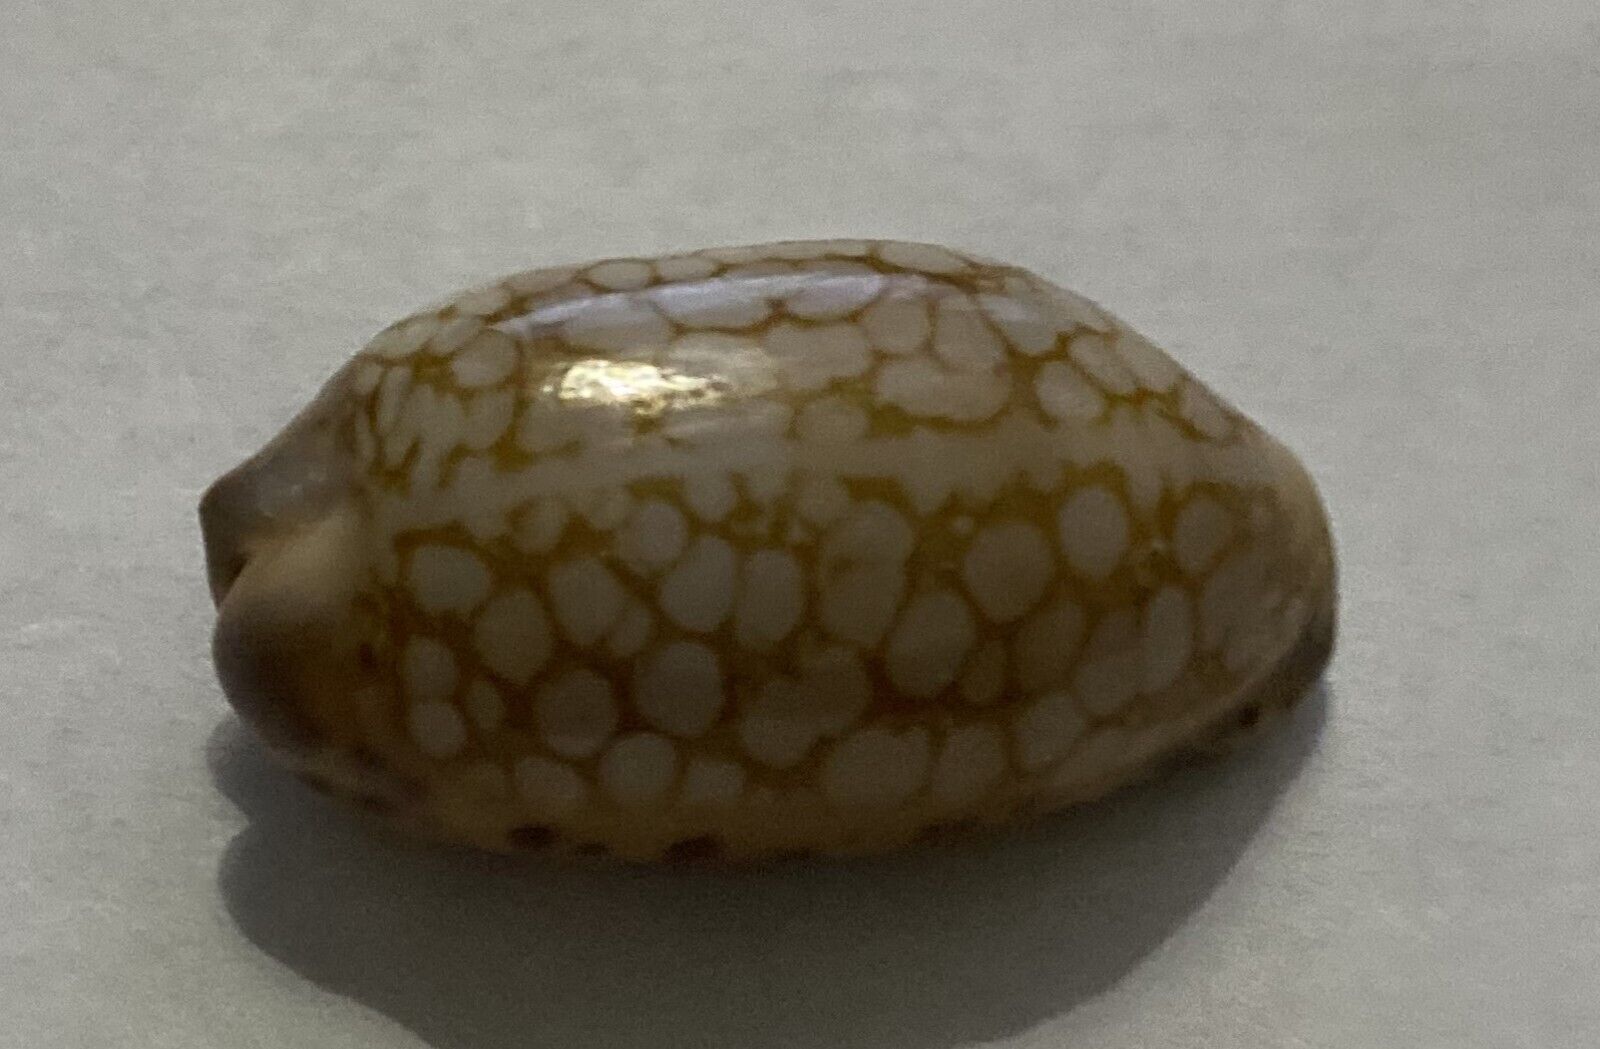 CYPRAEA SCURRA Madagascar shell size 29mm